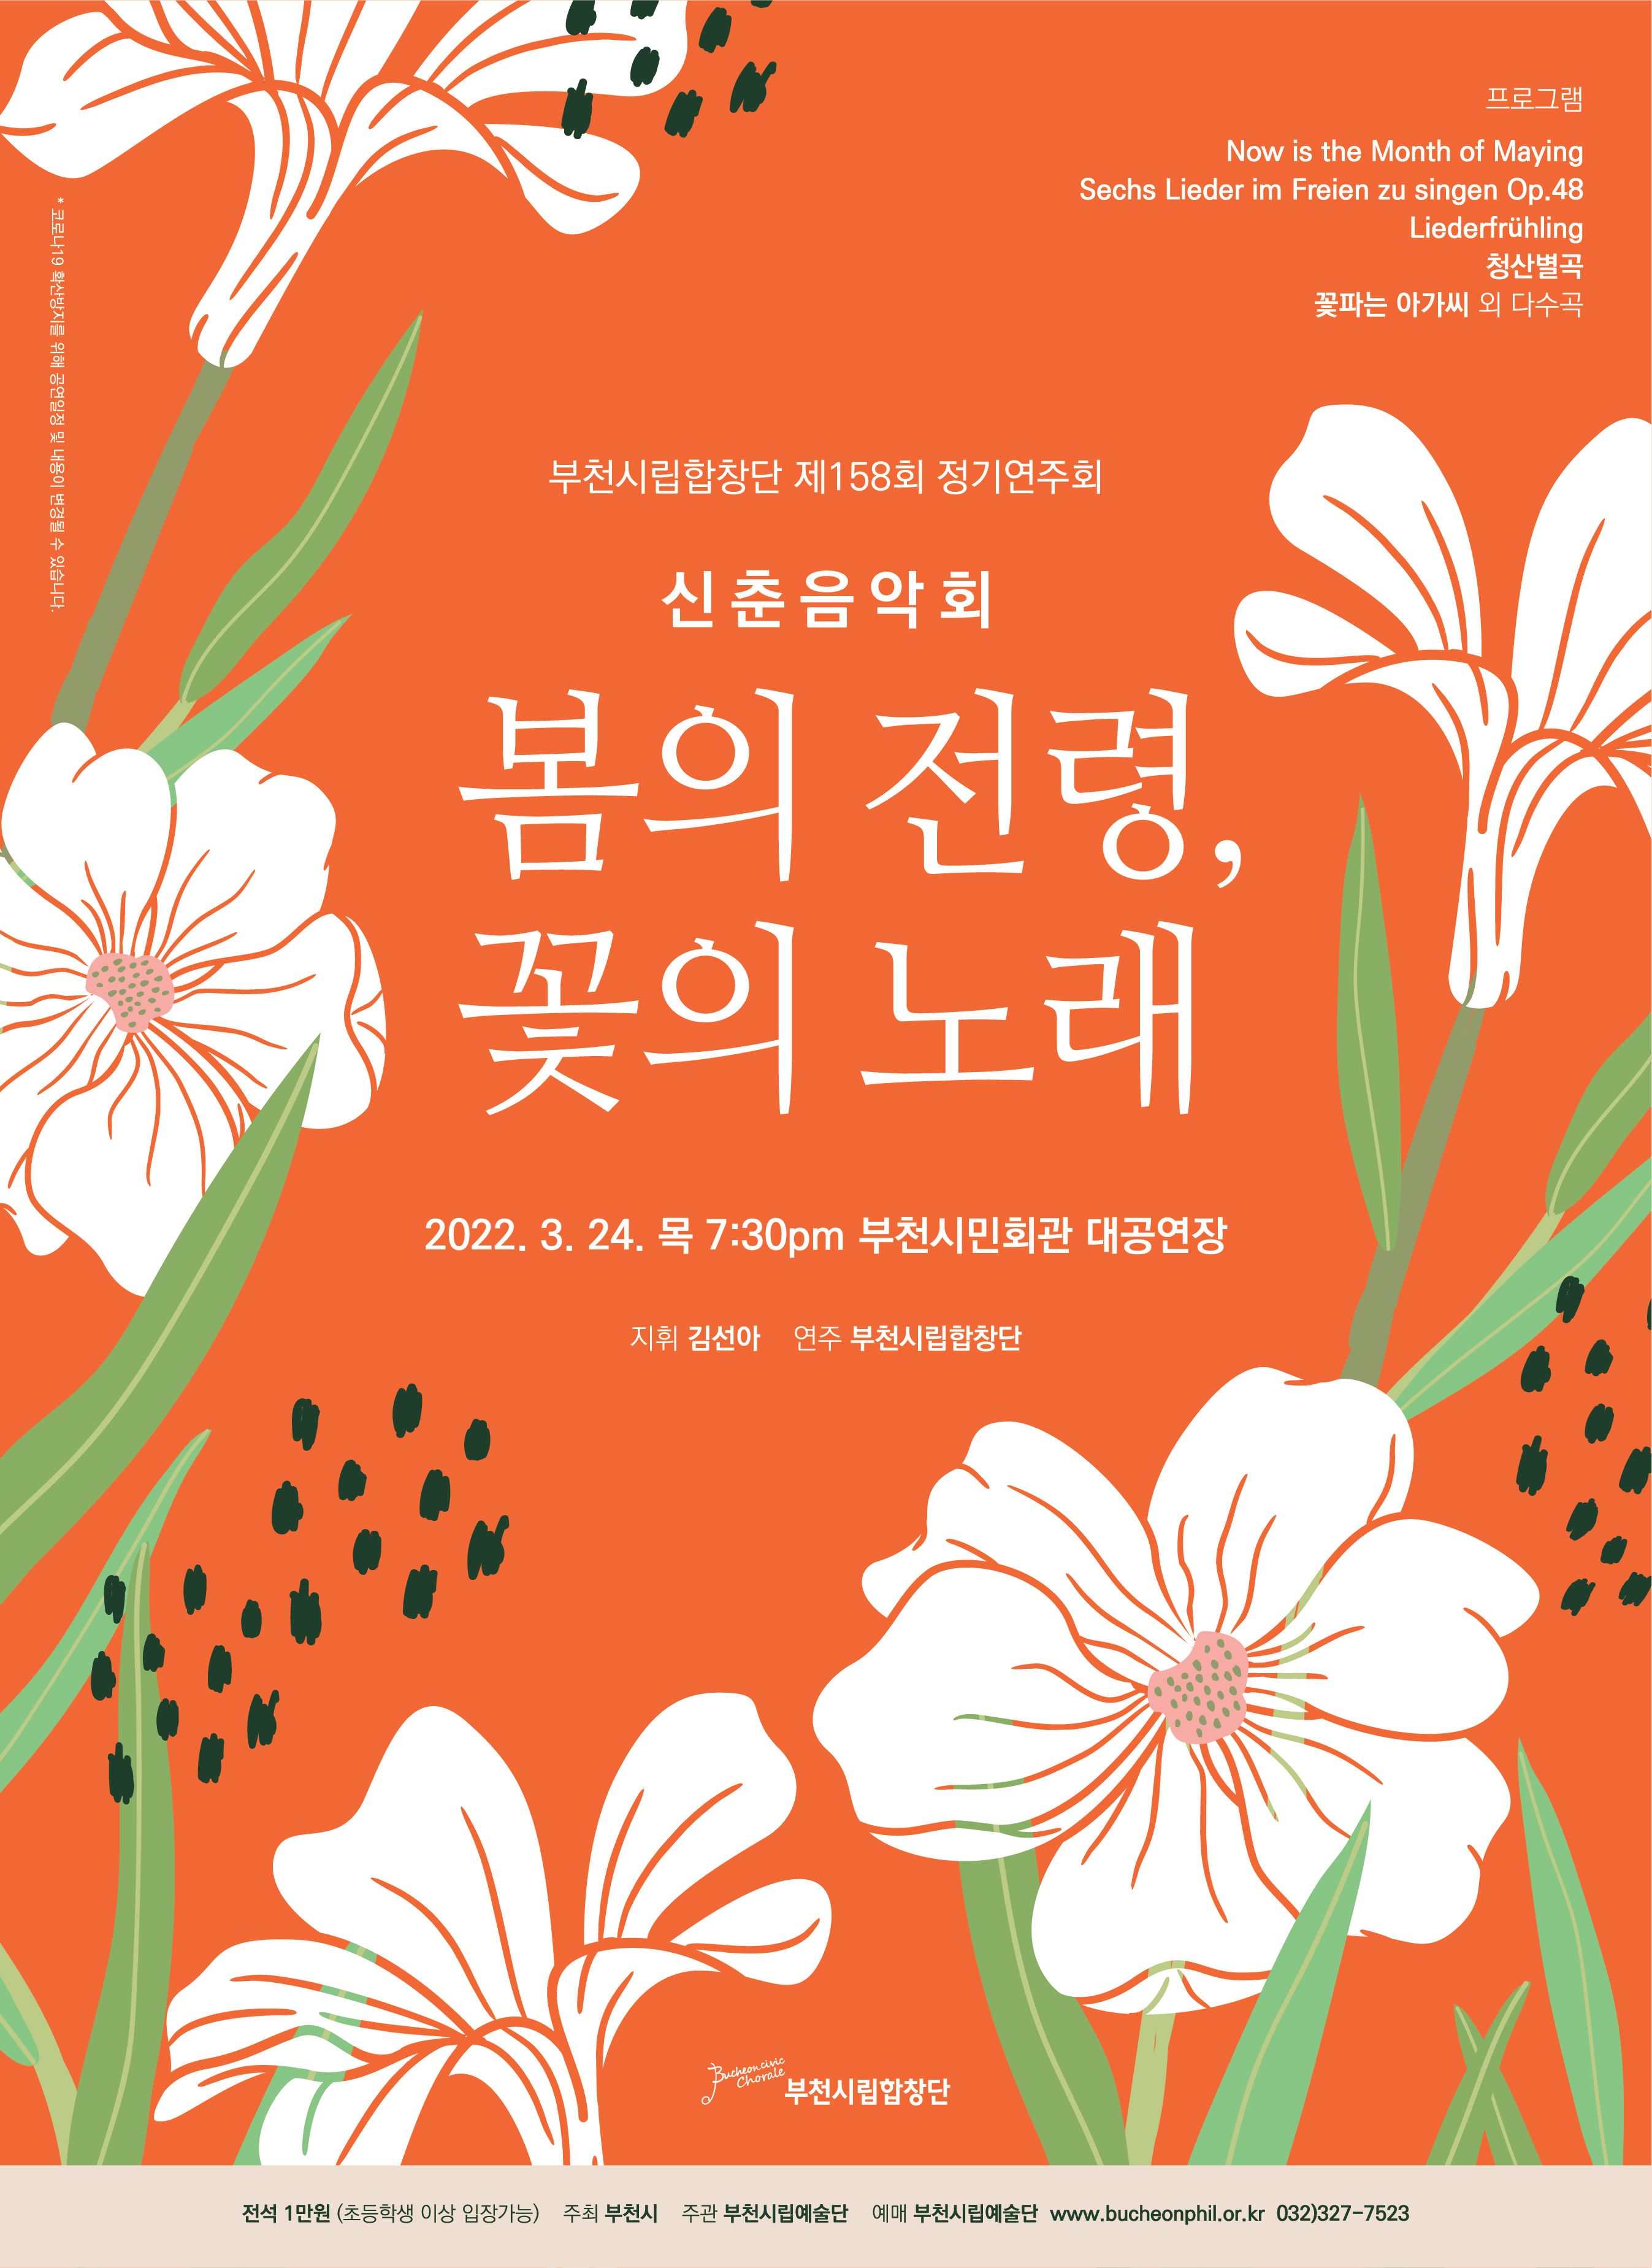 [3.24]부천시립합창단 제158회 정기연주회 - 신춘음악회 <봄의 전령, 꽃의 노래>